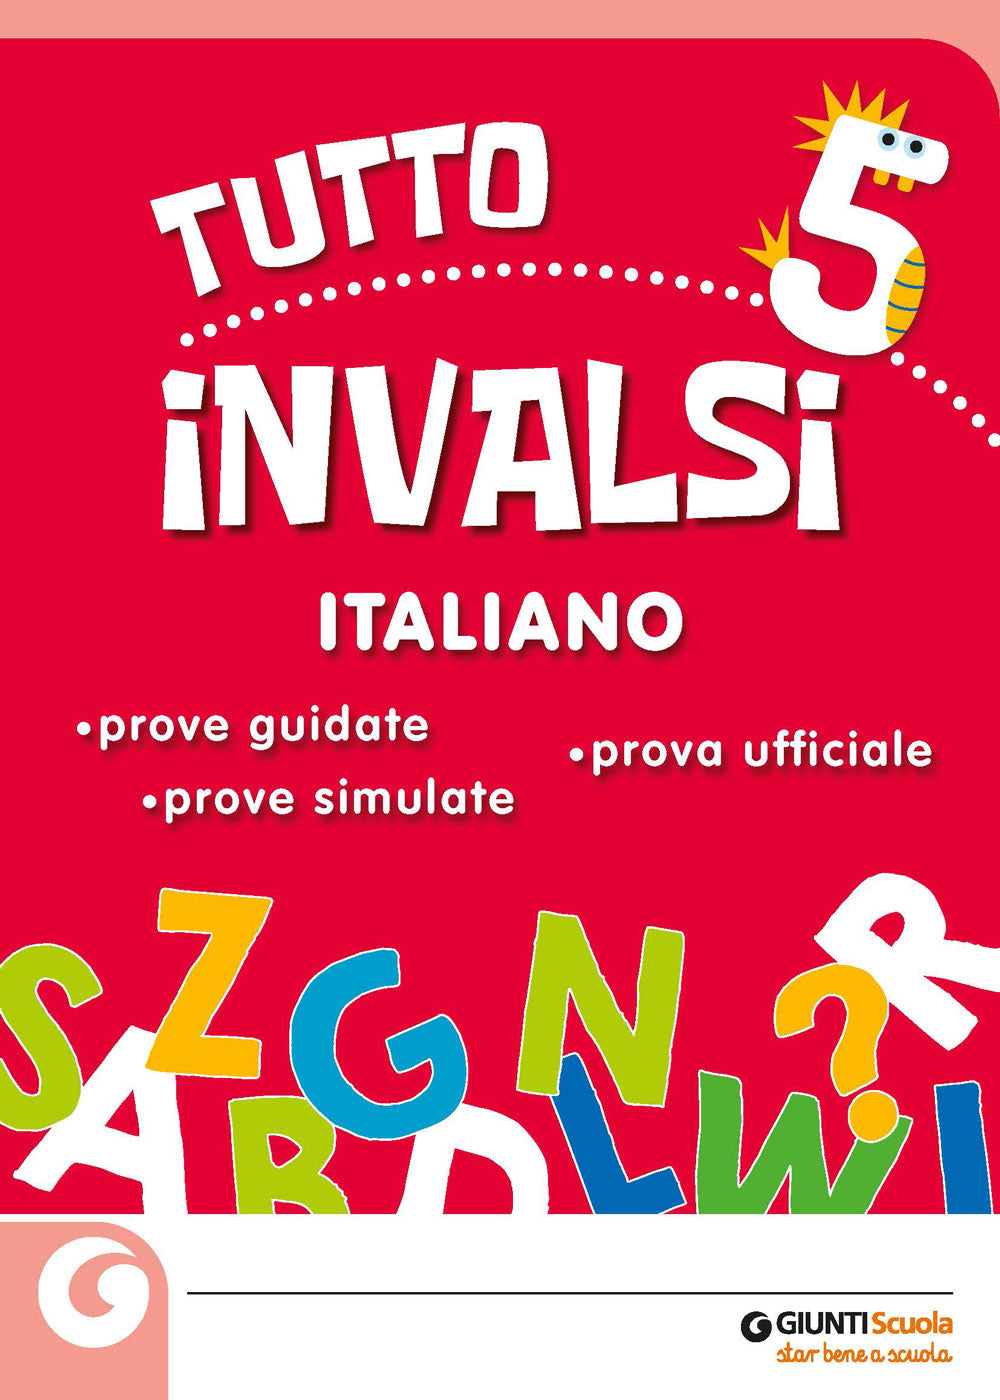 Tutto INVALSI - Italiano 5